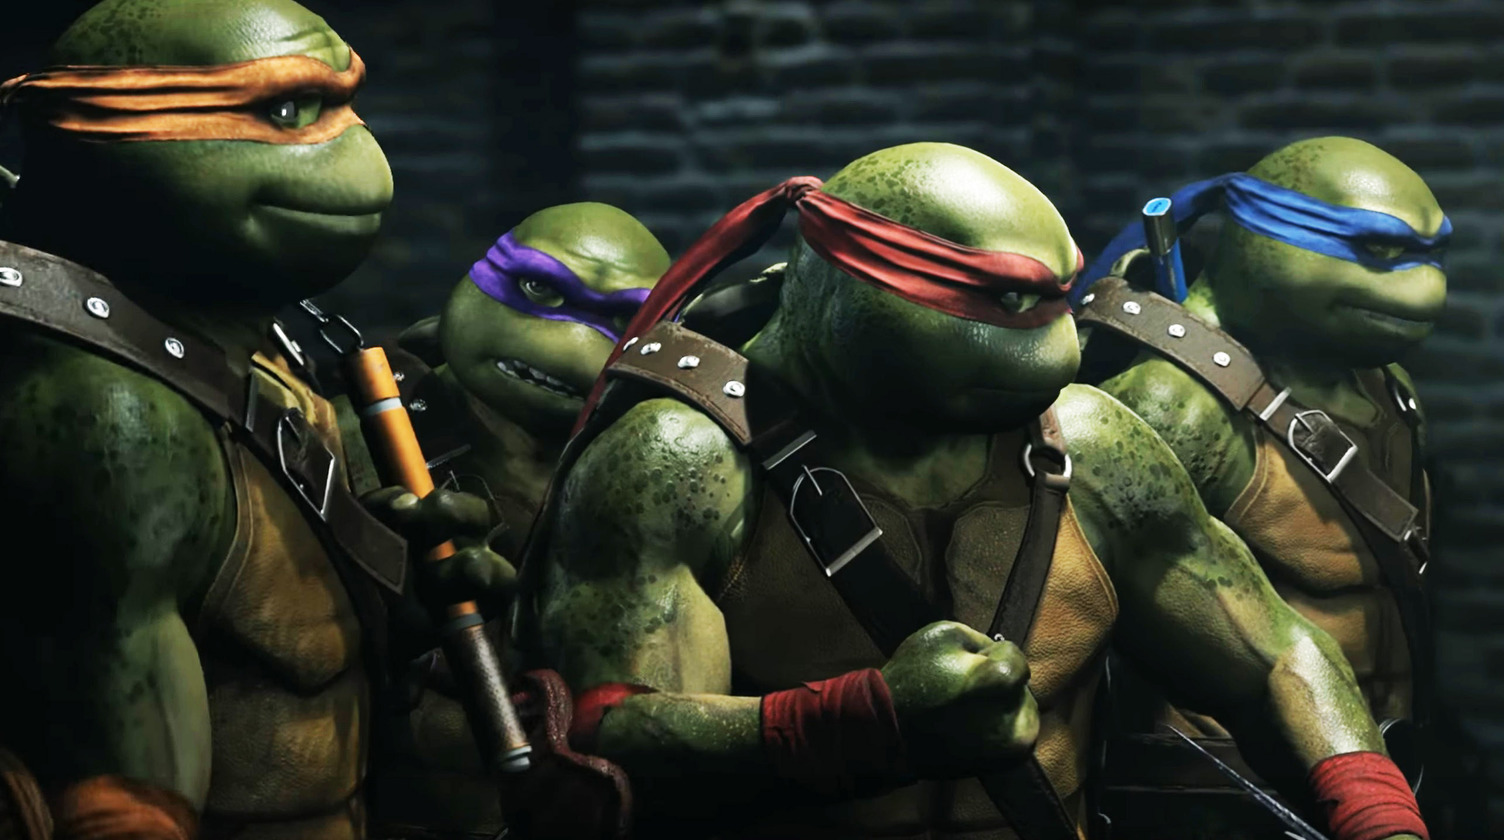 New Ninja Turtles Show Coming to Nickelodeon • chorus.fm